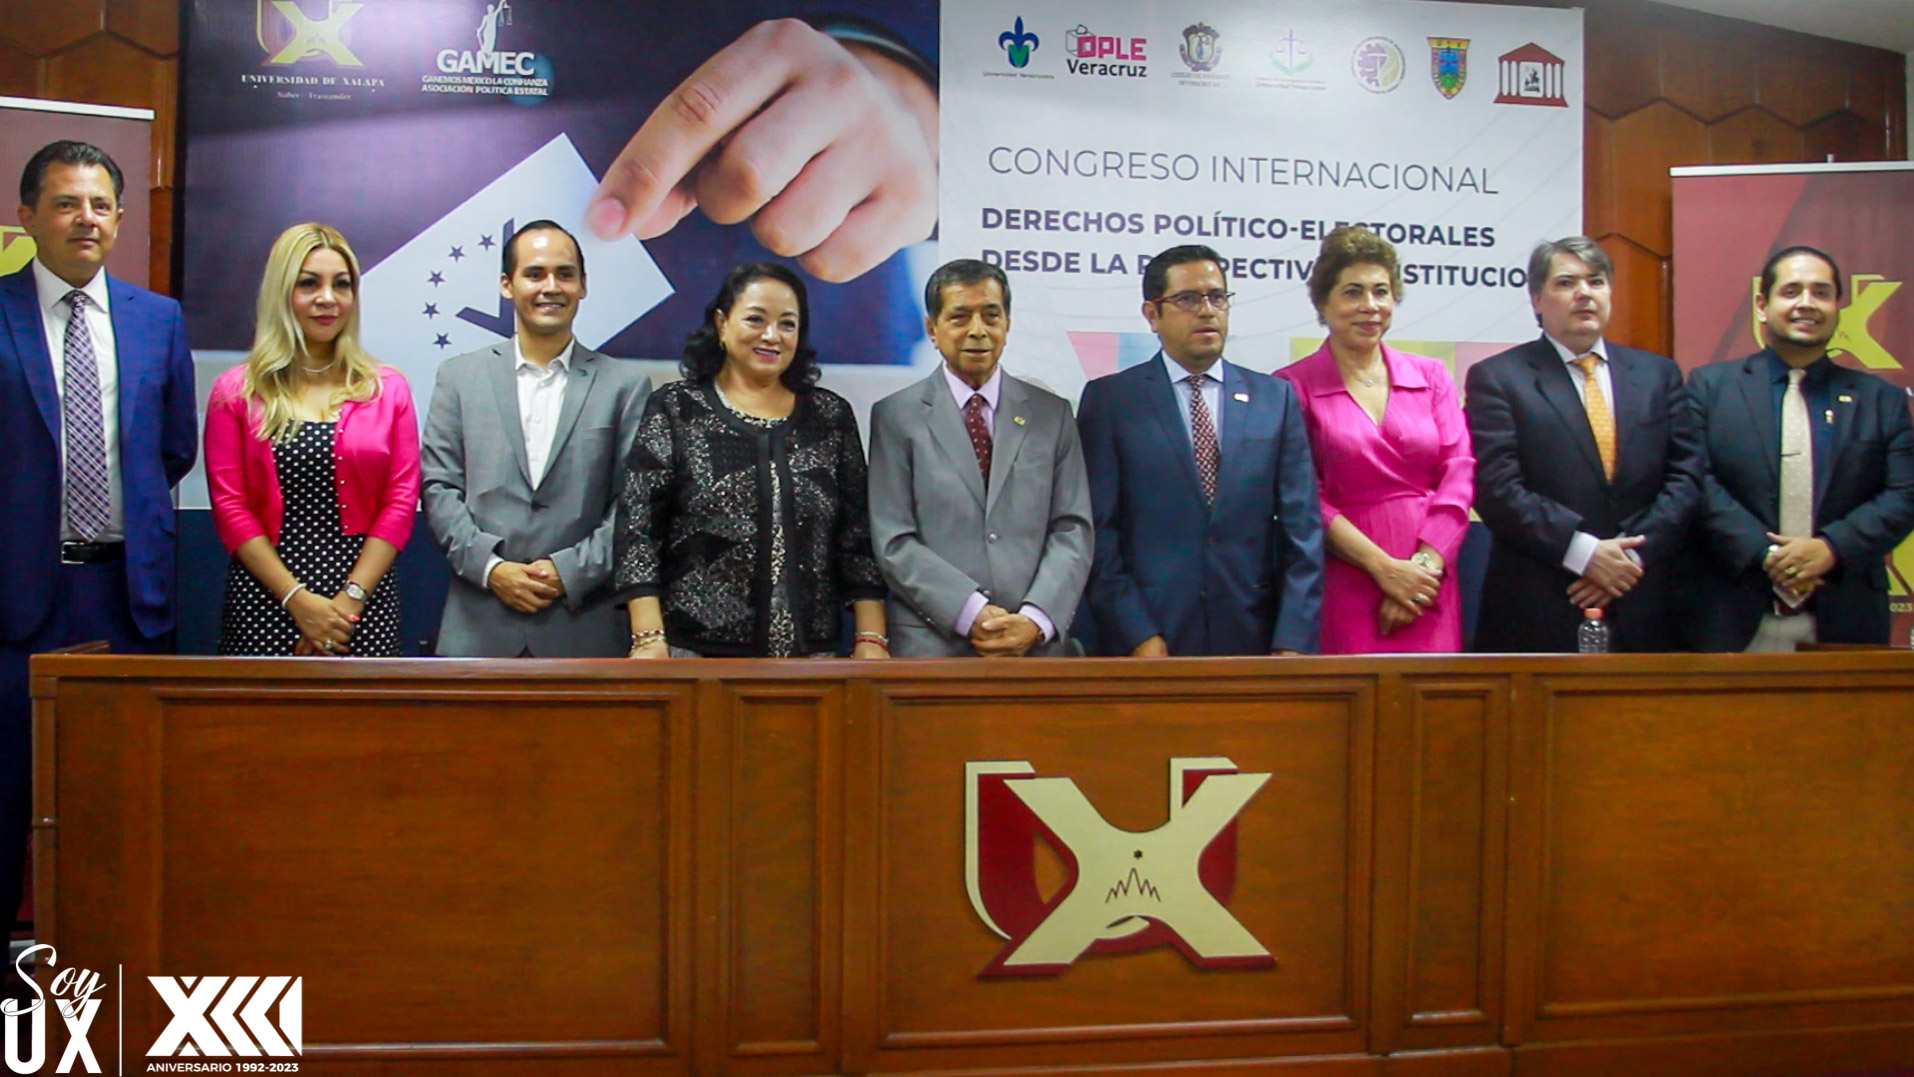 Congreso Internacional sobre Derechos Político – Electorales desde la Perspectiva Constitucional fue inaugurado en la Universidad de Xalapa